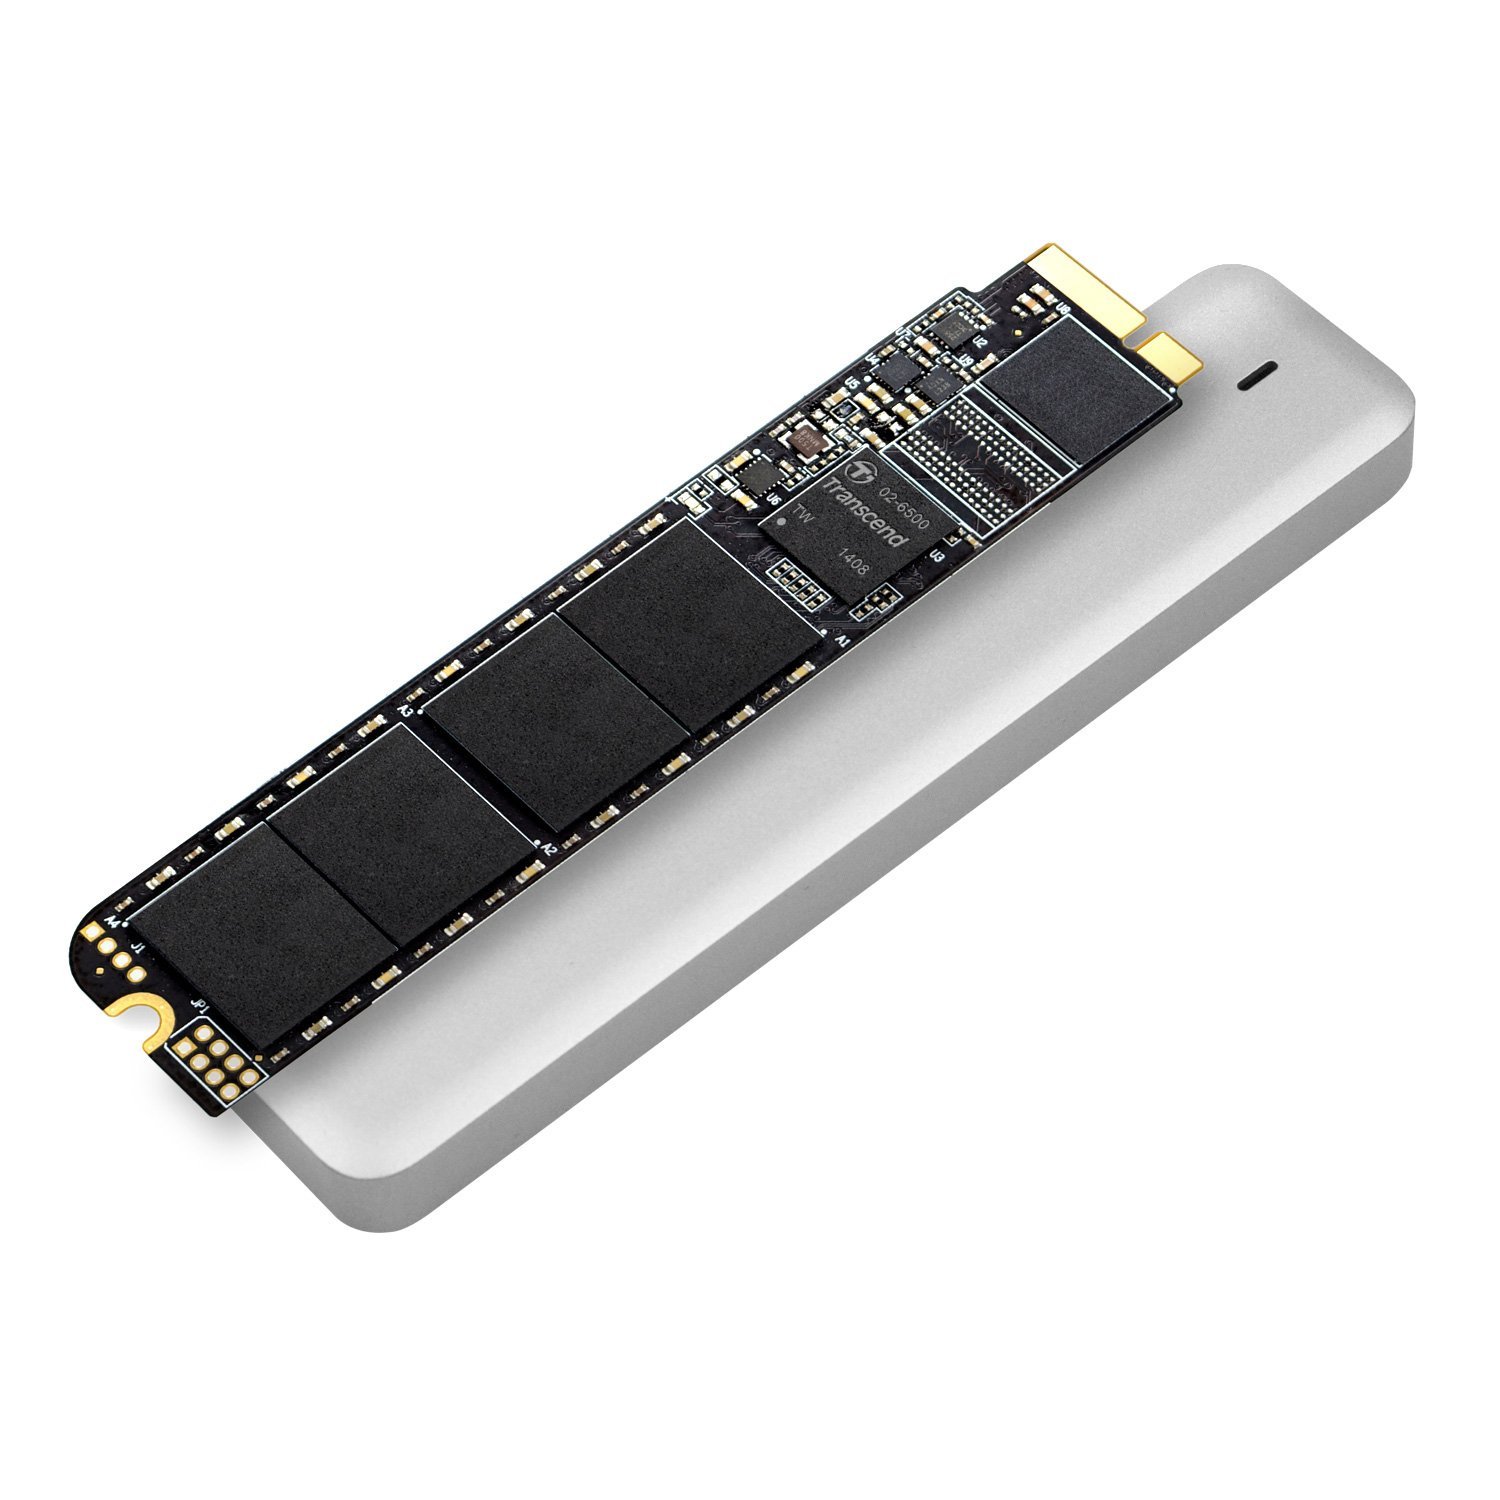 Transcend JetDrive 520 SSD 240GB SATA6Gb/s, + Enclosure Case USB3.0 SSD disks